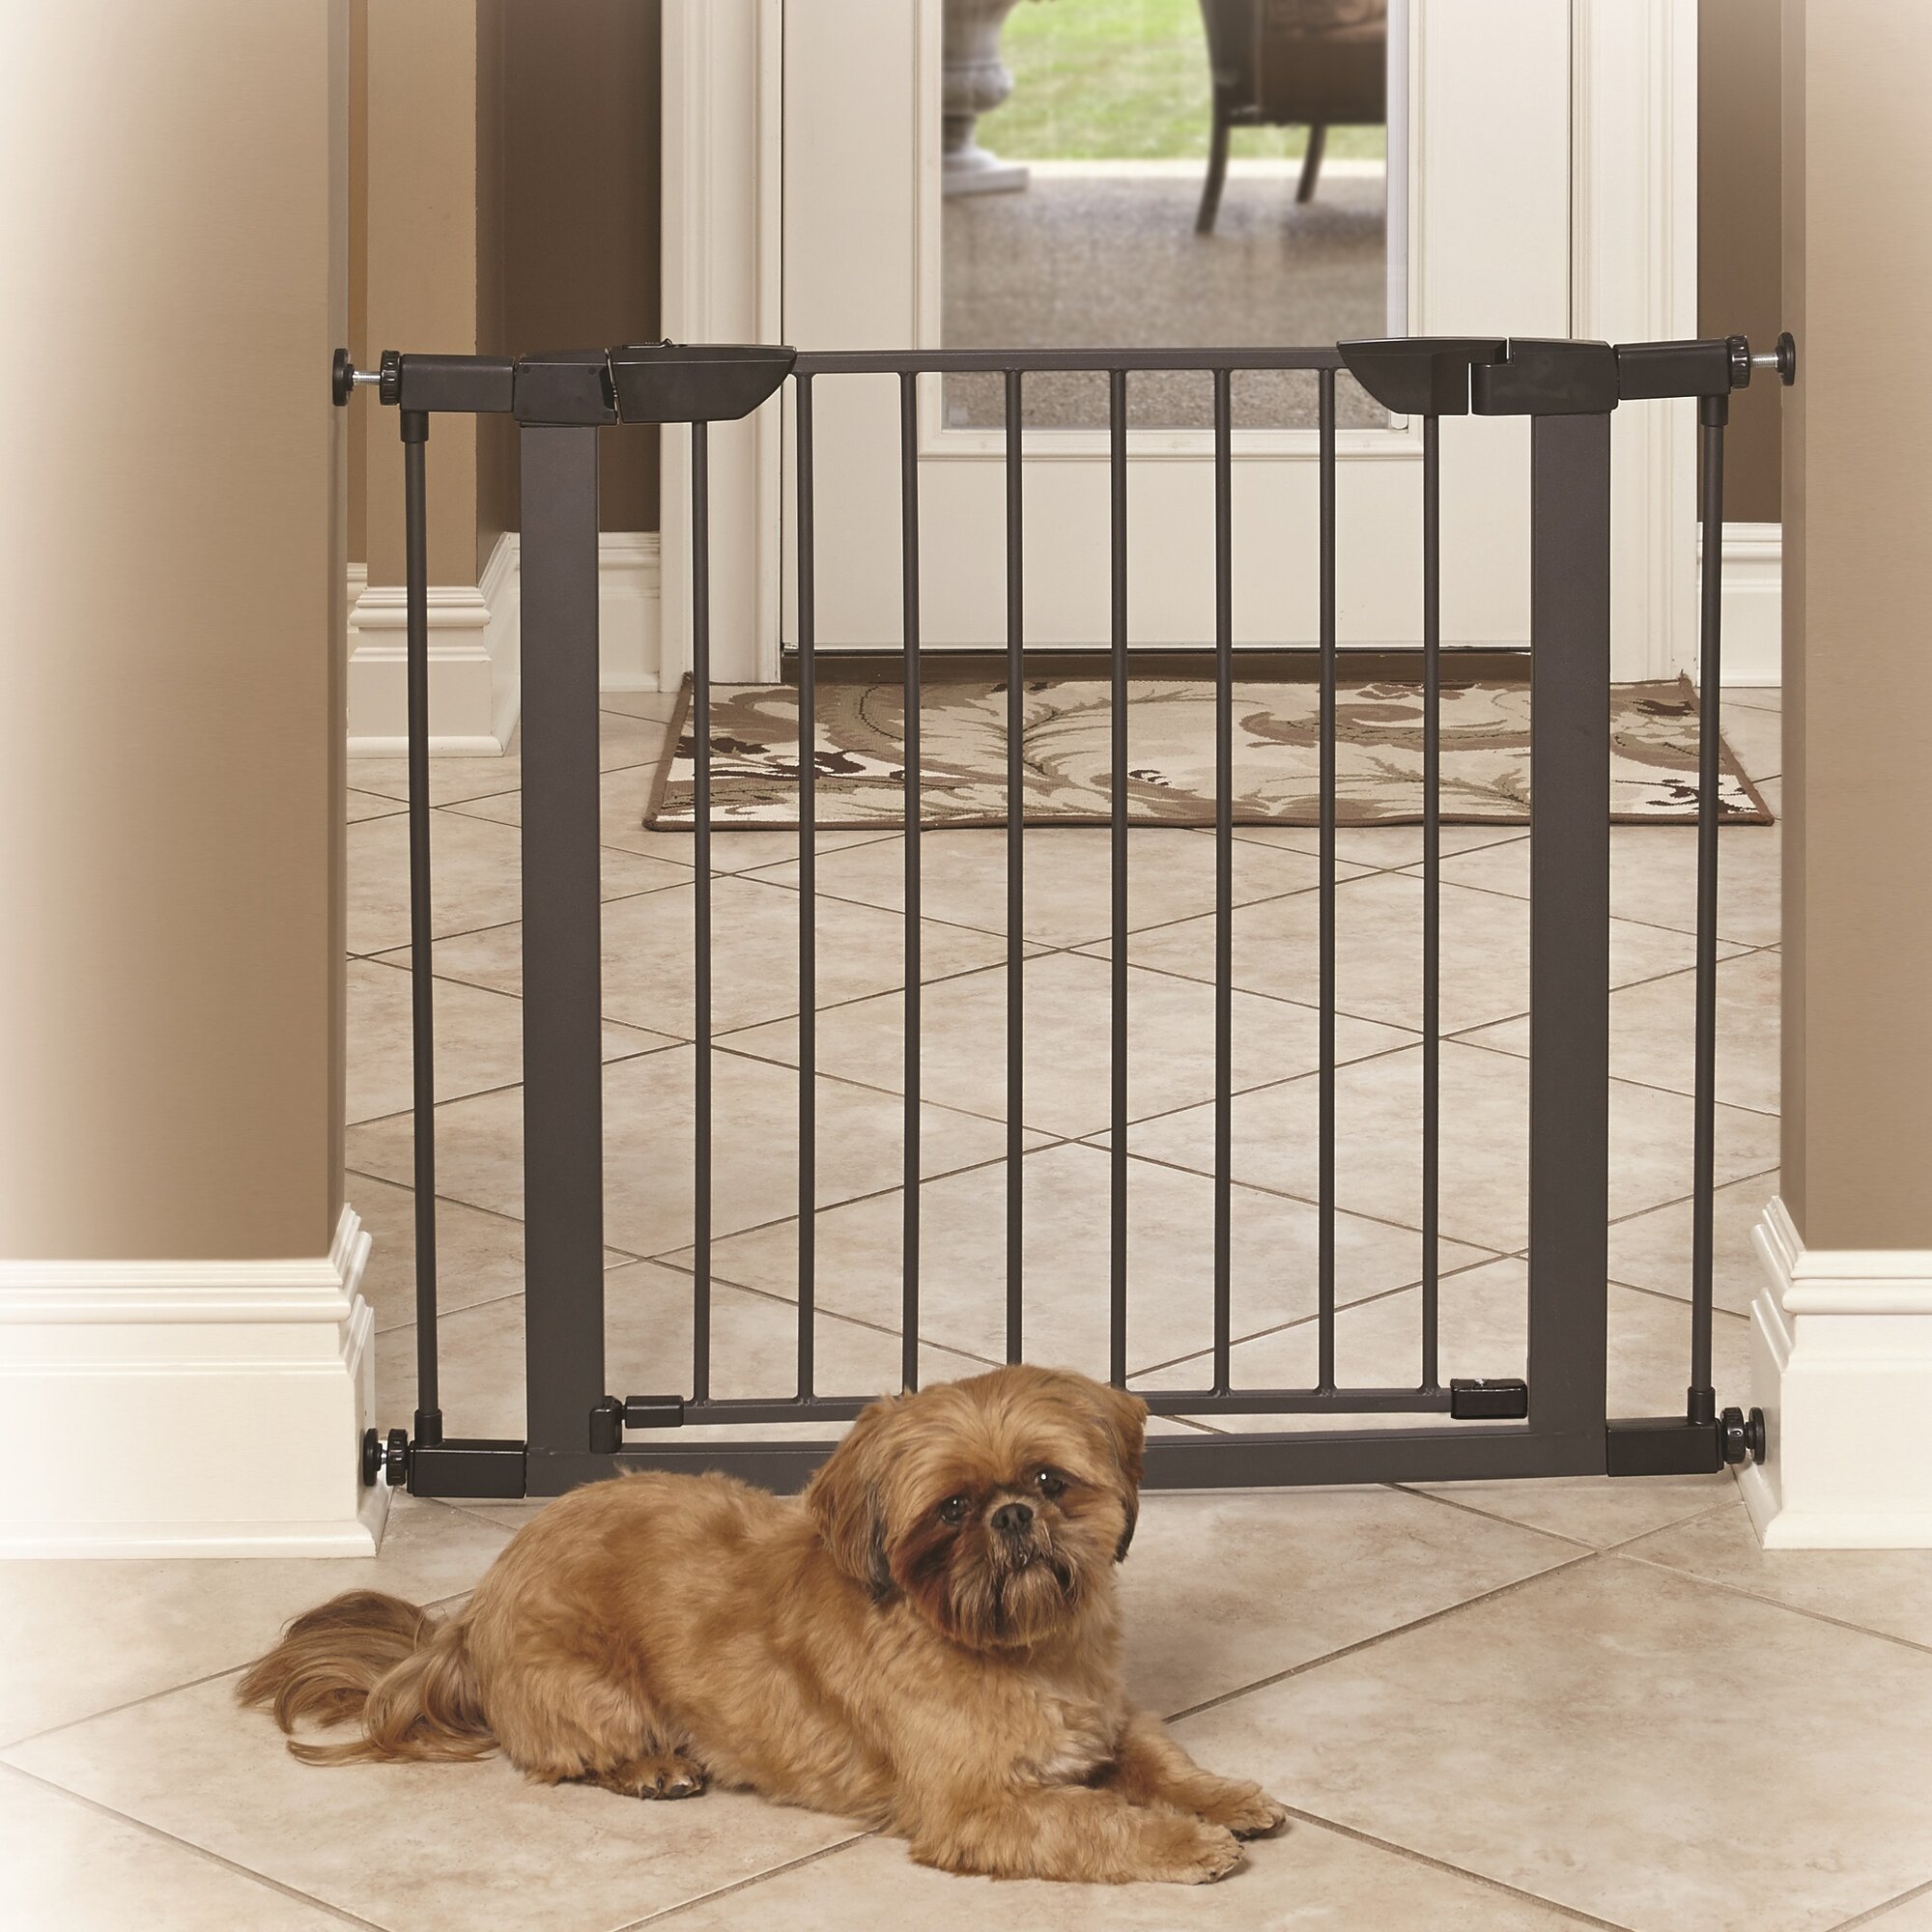 wallsaver pet gate mount